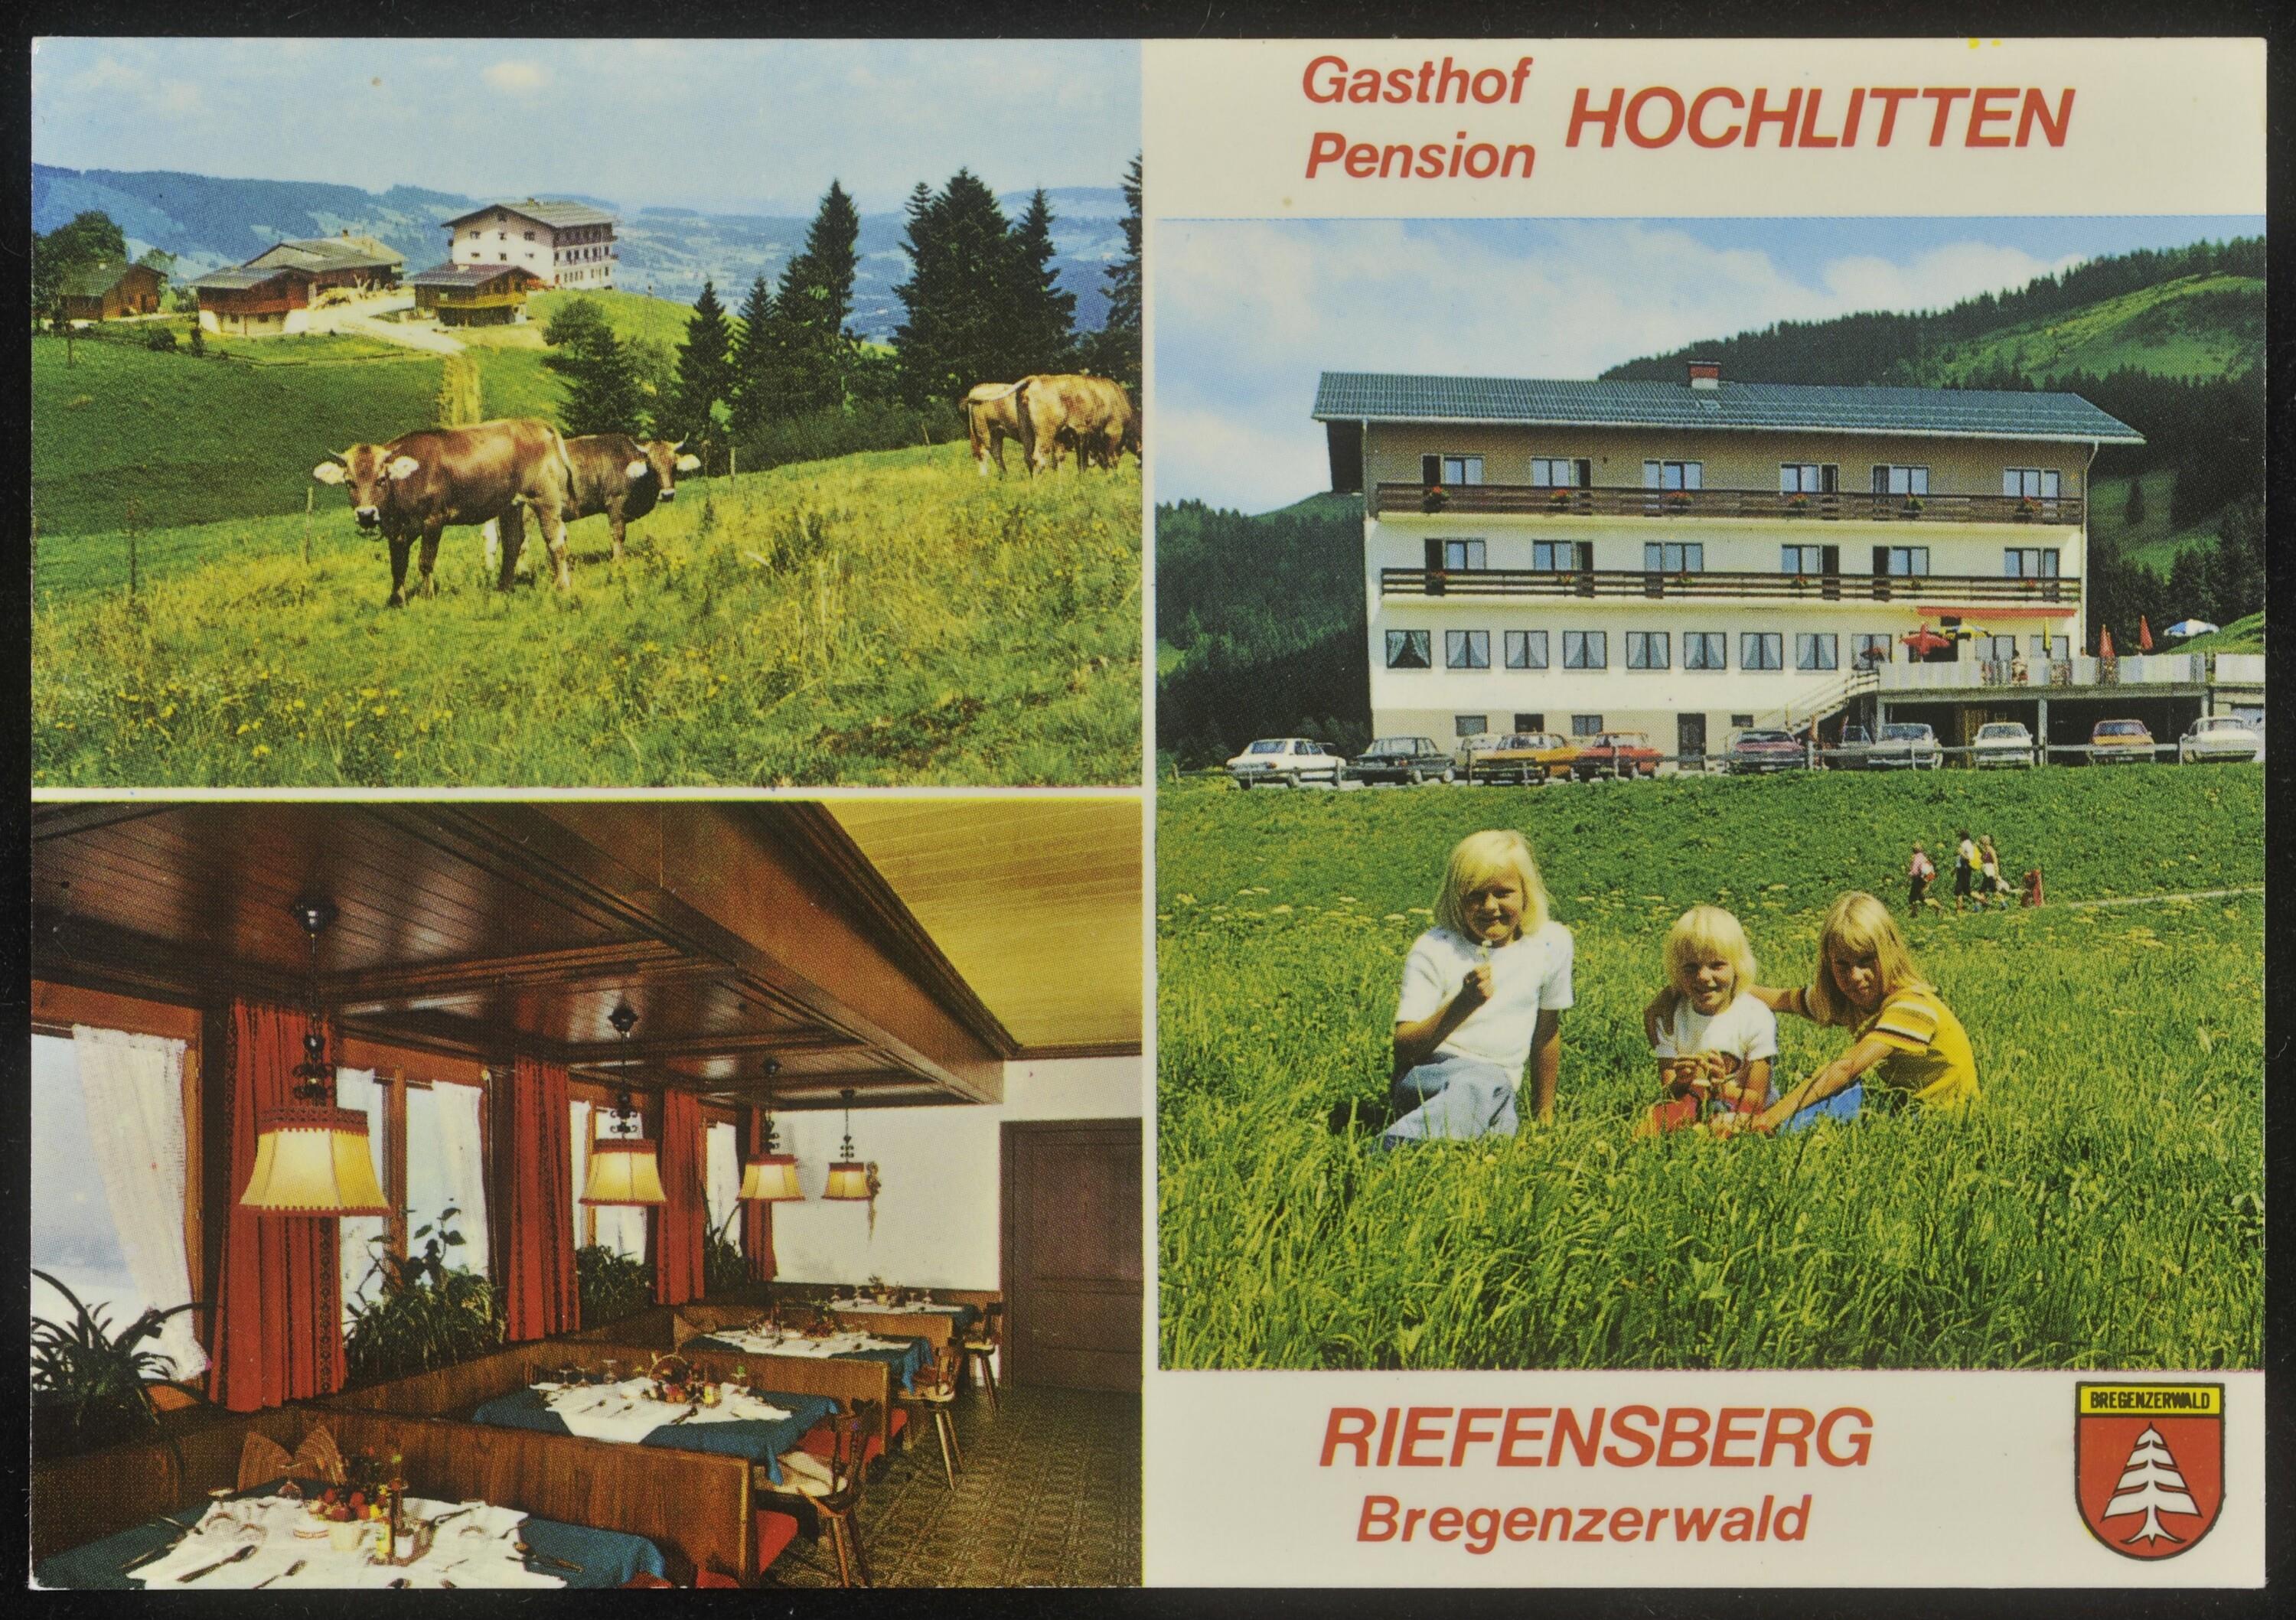 Gasthof Pension Hochlitten Riefensberg Bregenzerwald></div>


    <hr>
    <div class=